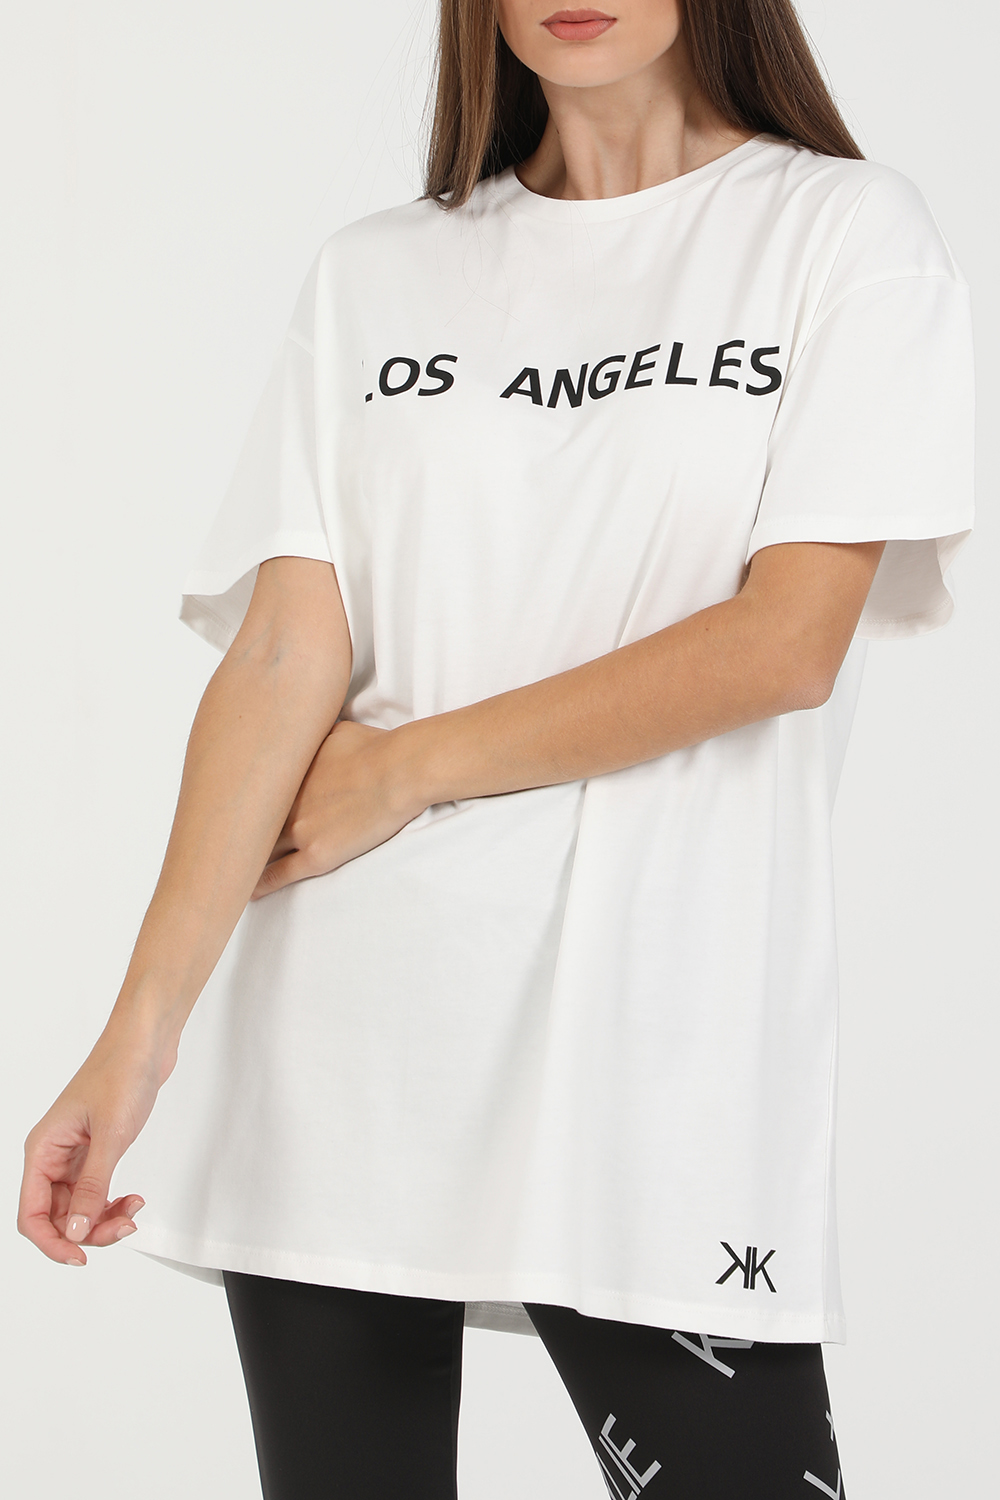 Γυναικεία/Ρούχα/Μπλούζες/Κοντομάνικες KENDALL + KYLIE - Γυναικείο t-shirt KENDALL + KYLIE W ACTIVE LA OVERSIZED λευκό